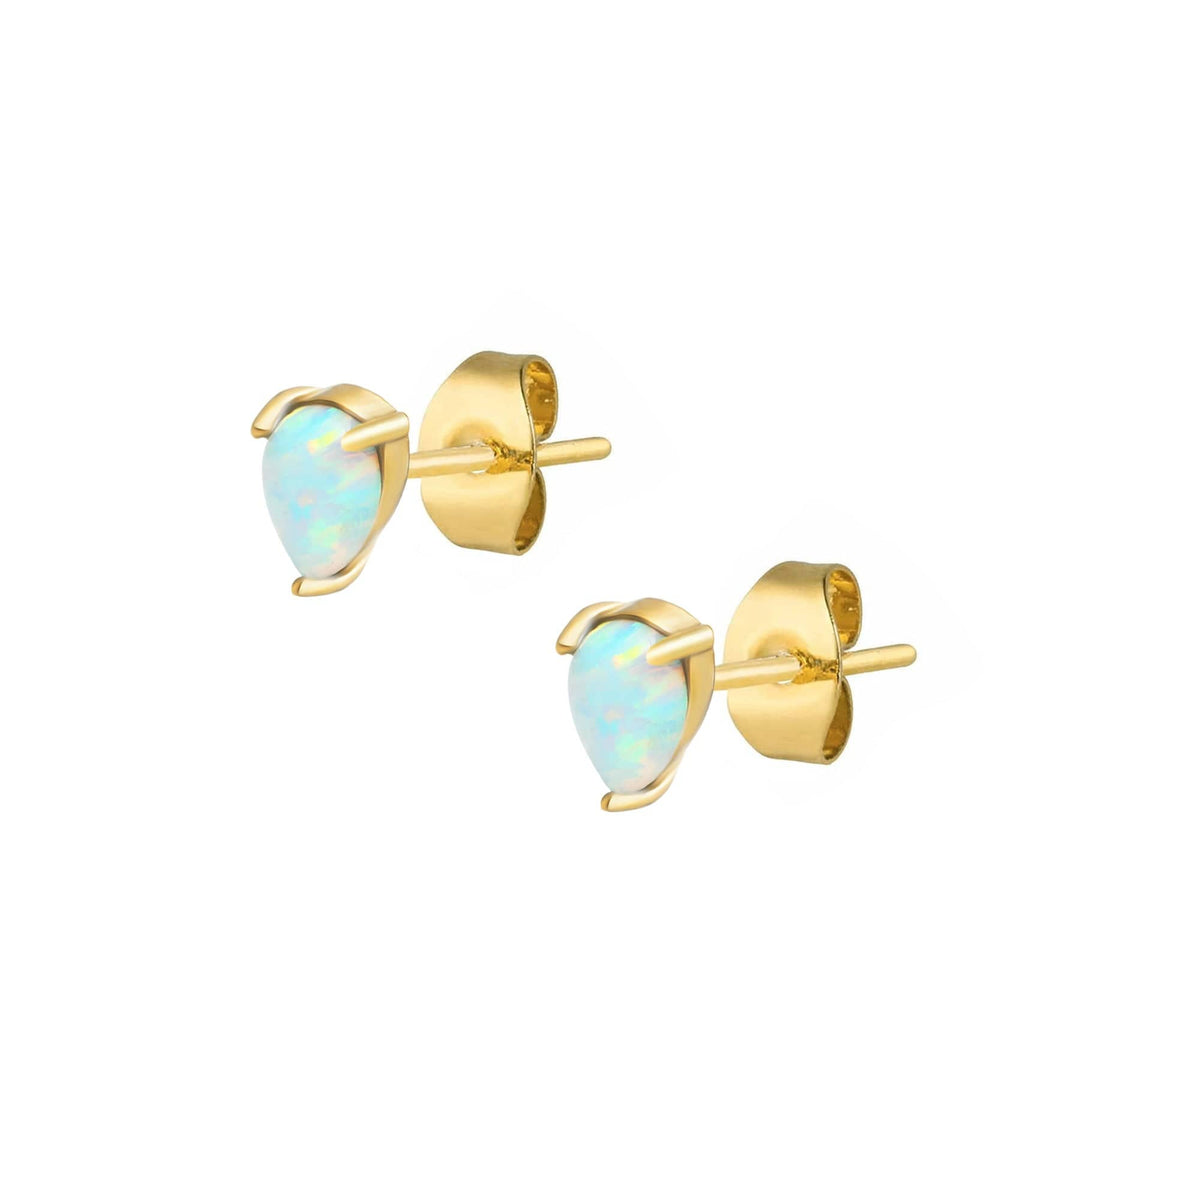 BOHOMOON Stainless Steel Amanda Opal Stud Earrings Gold